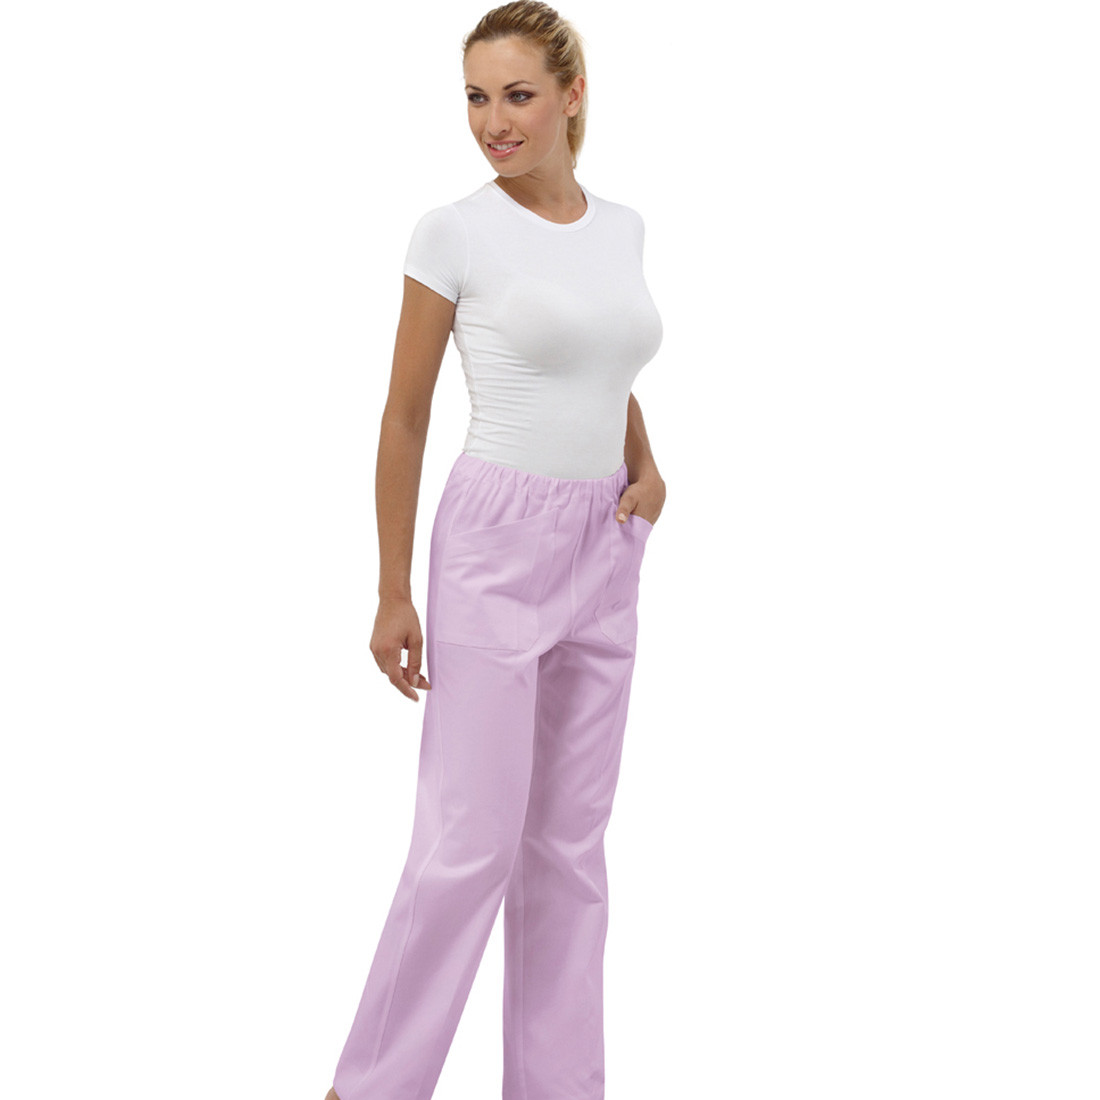 Pantaloni medici STAR II unisex - Abbigliamento di protezione